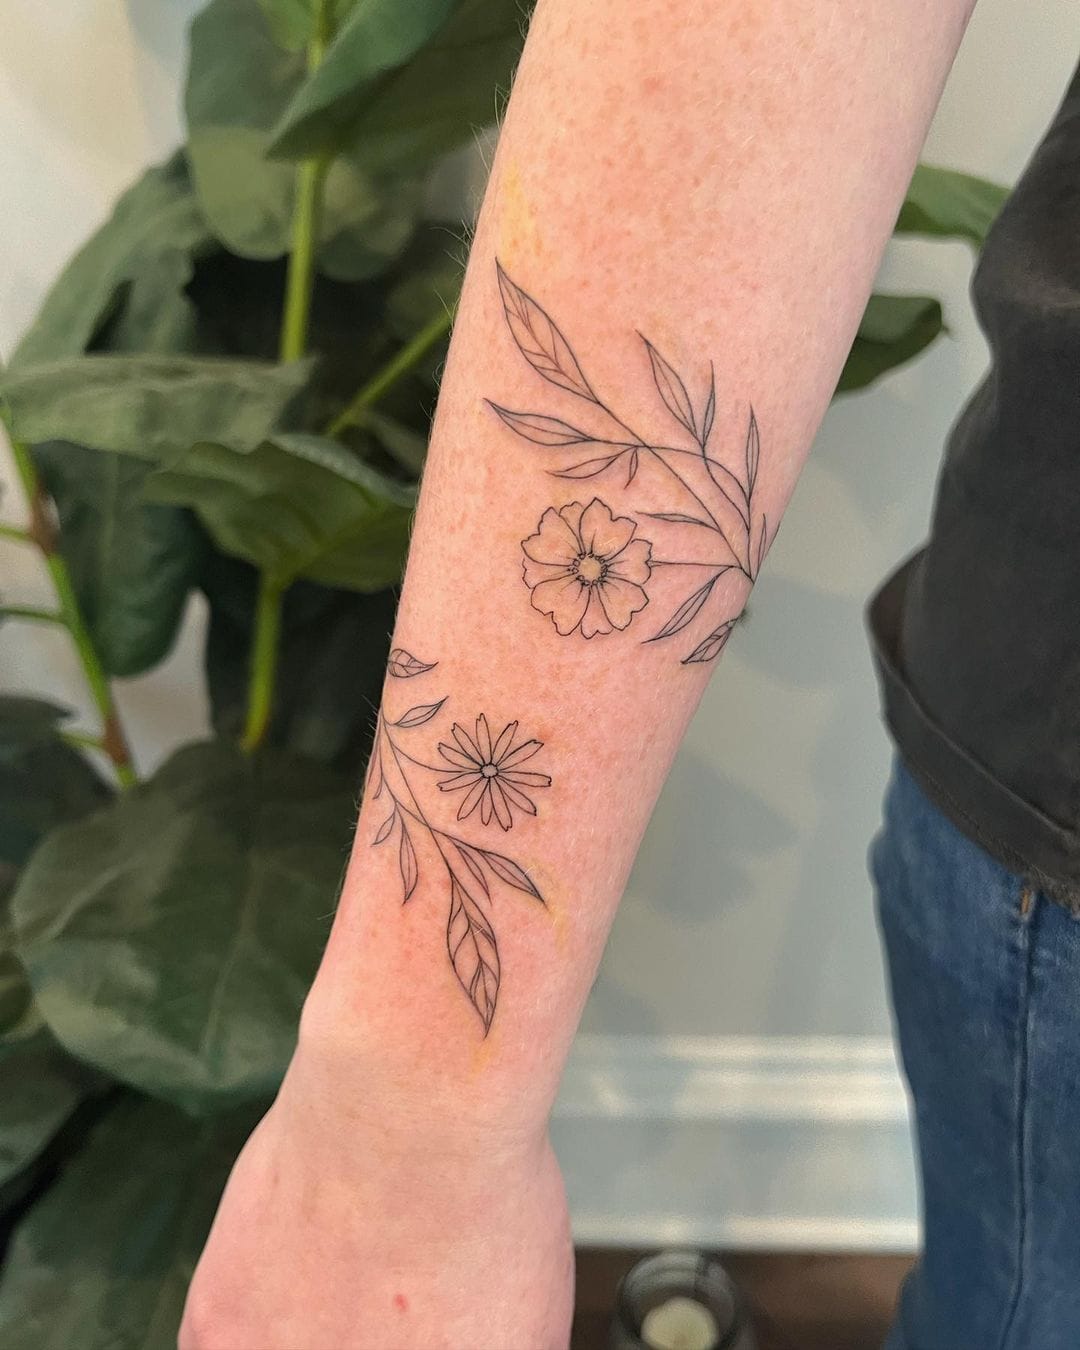 Flowers vine  Save for inspo  tattoo tatt tattoos tattooideas  tattoosleeve tattooed tattooist tattooart tattooing  Instagram